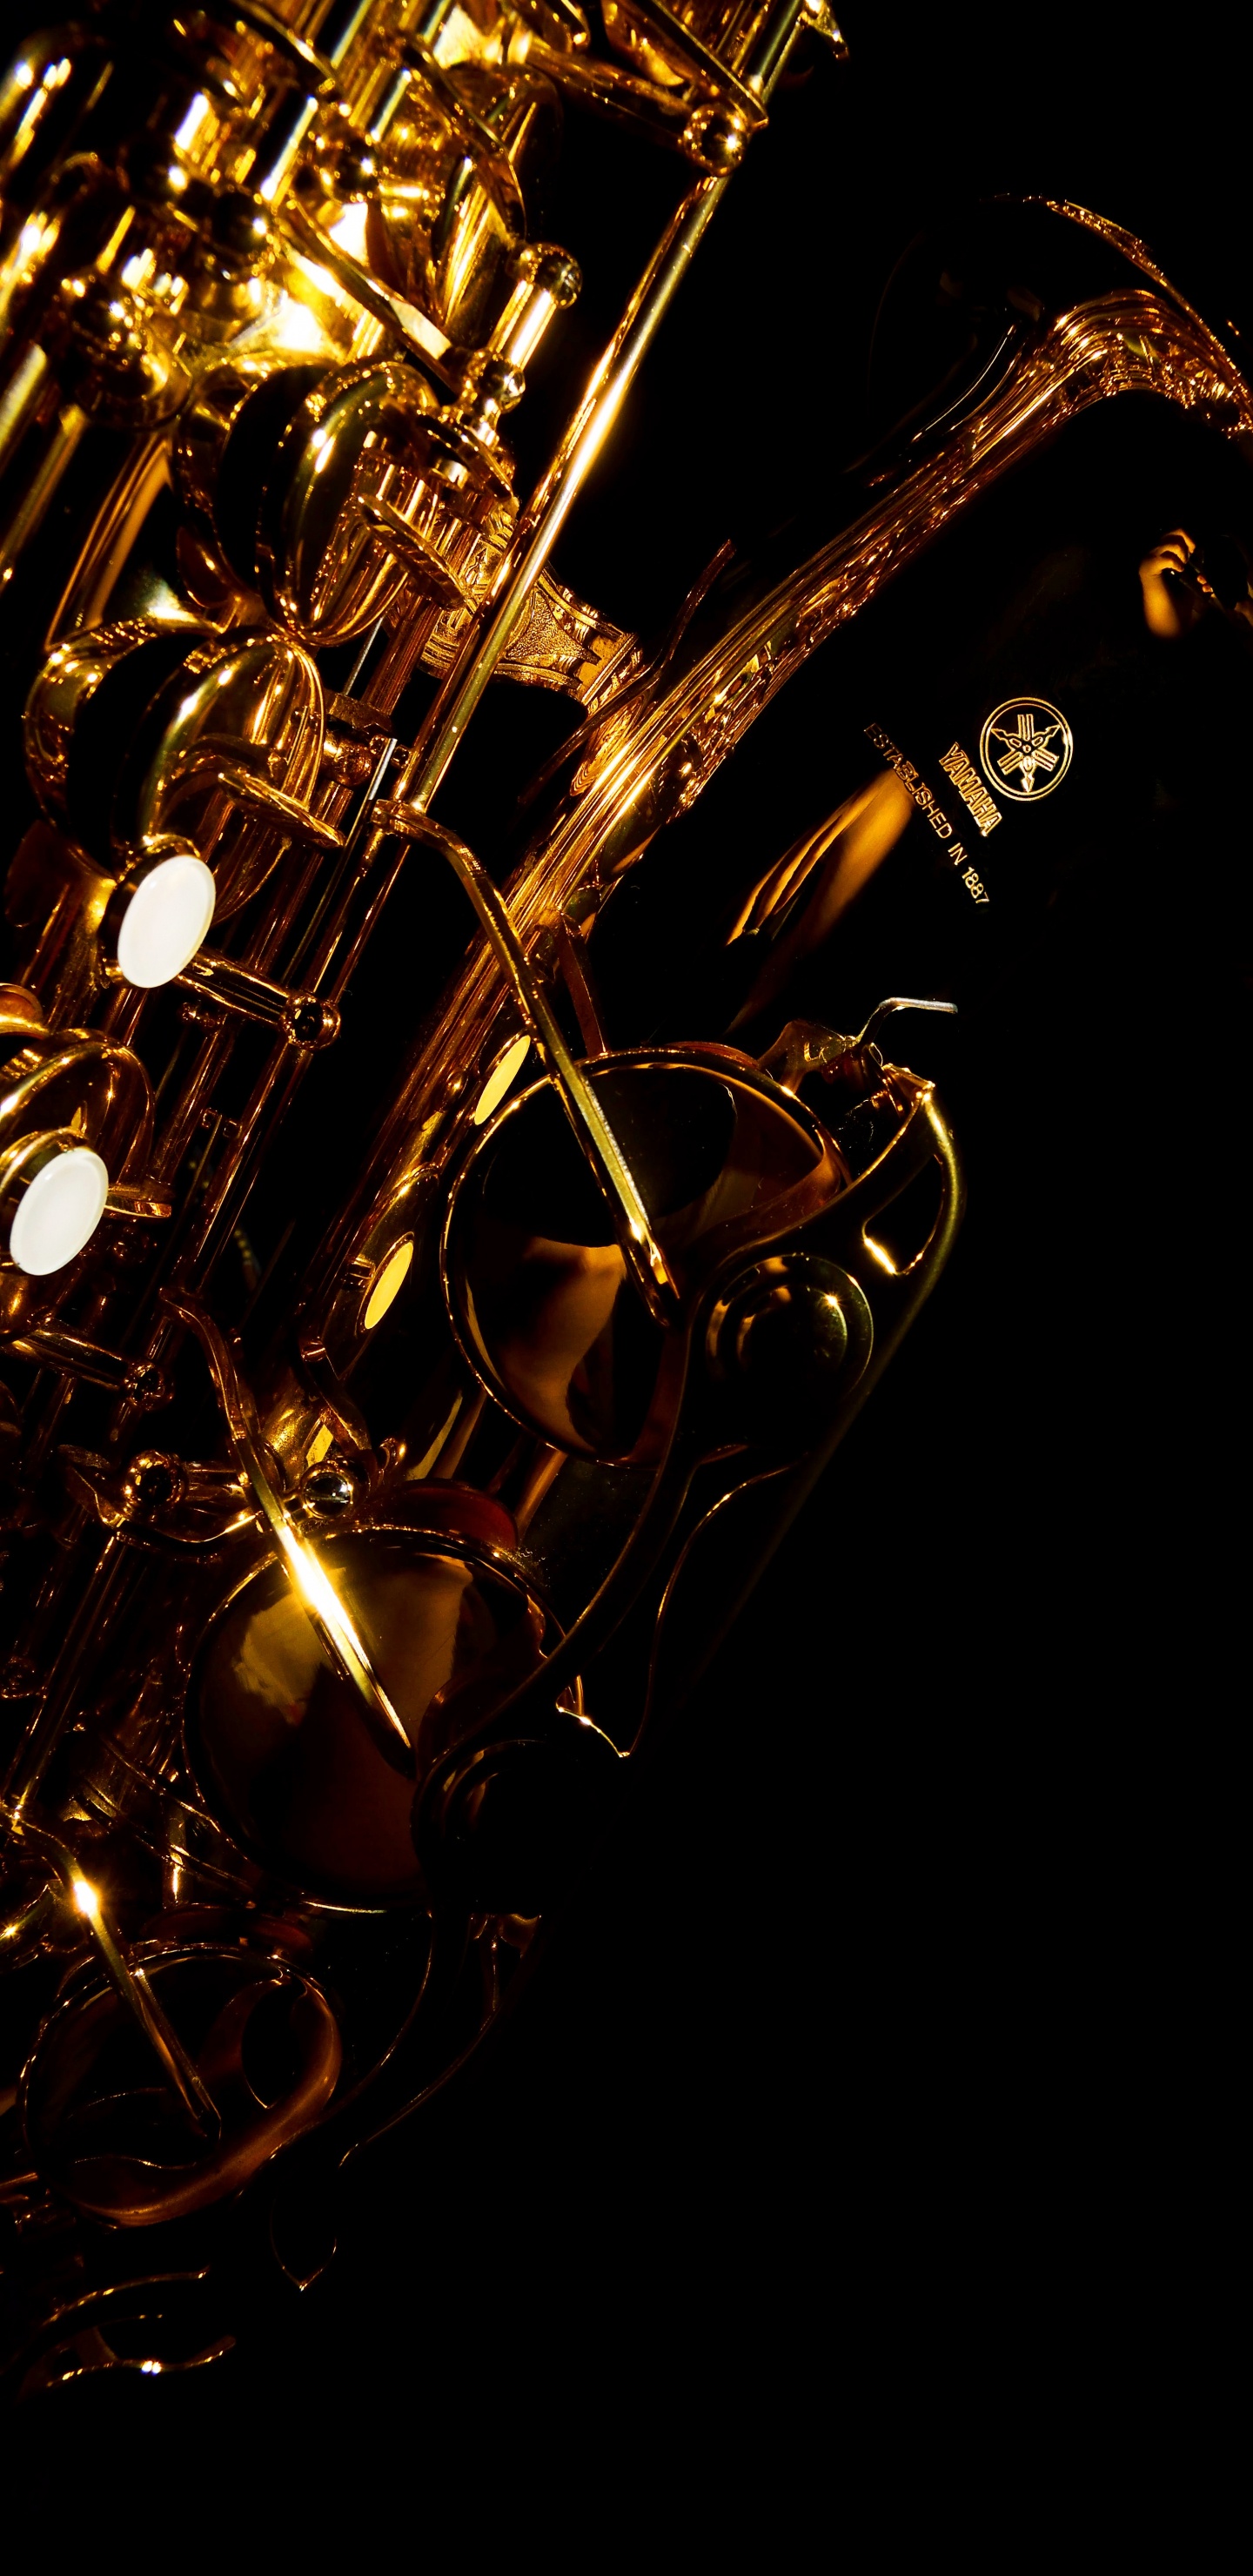 Trumpet, Saxophone, Brass Instrument, Wind Instrument, Violin. Wallpaper in 1440x2960 Resolution